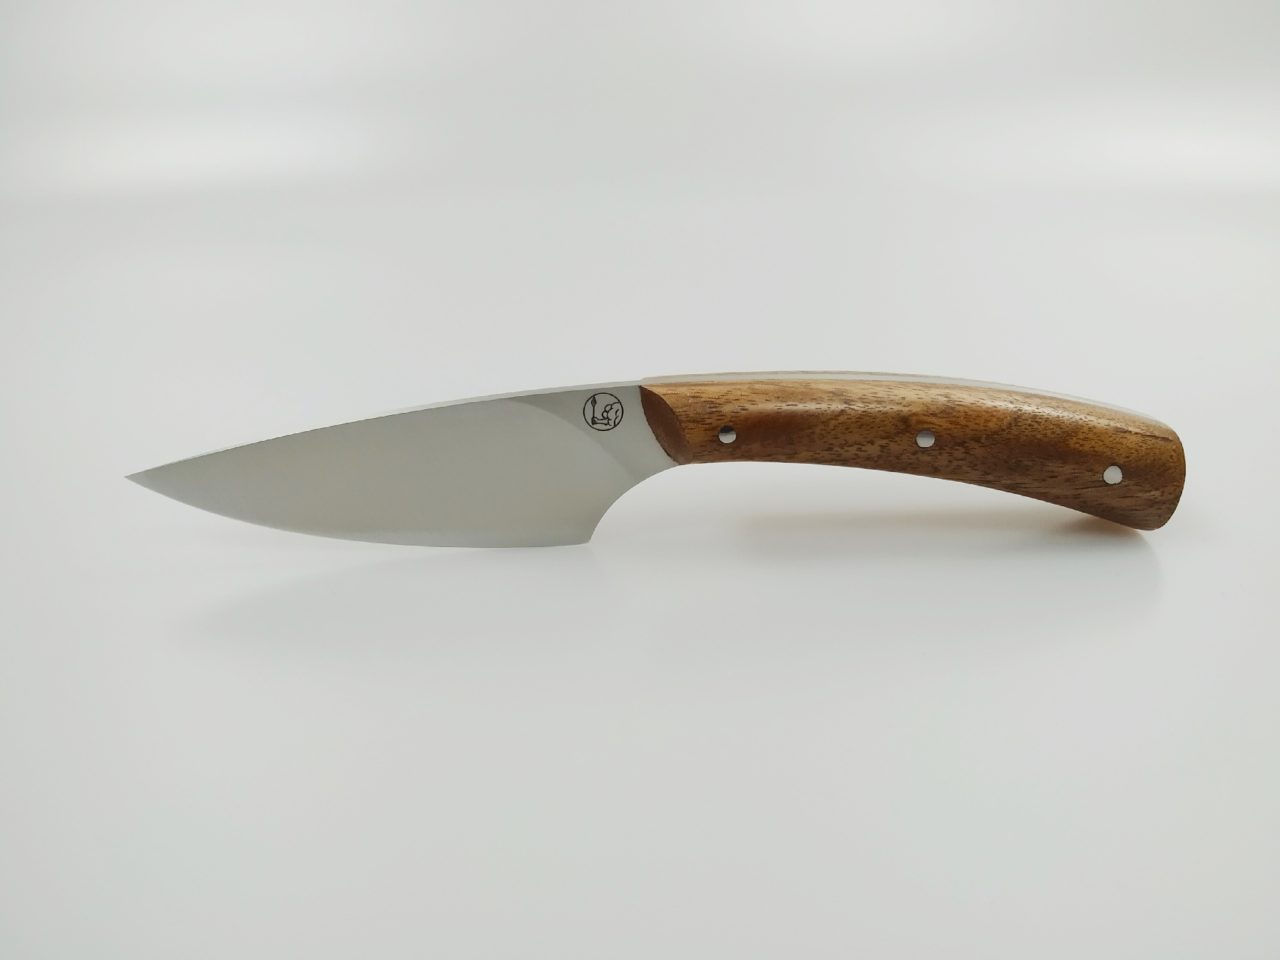 couteau de cuisine - couteau artisanal